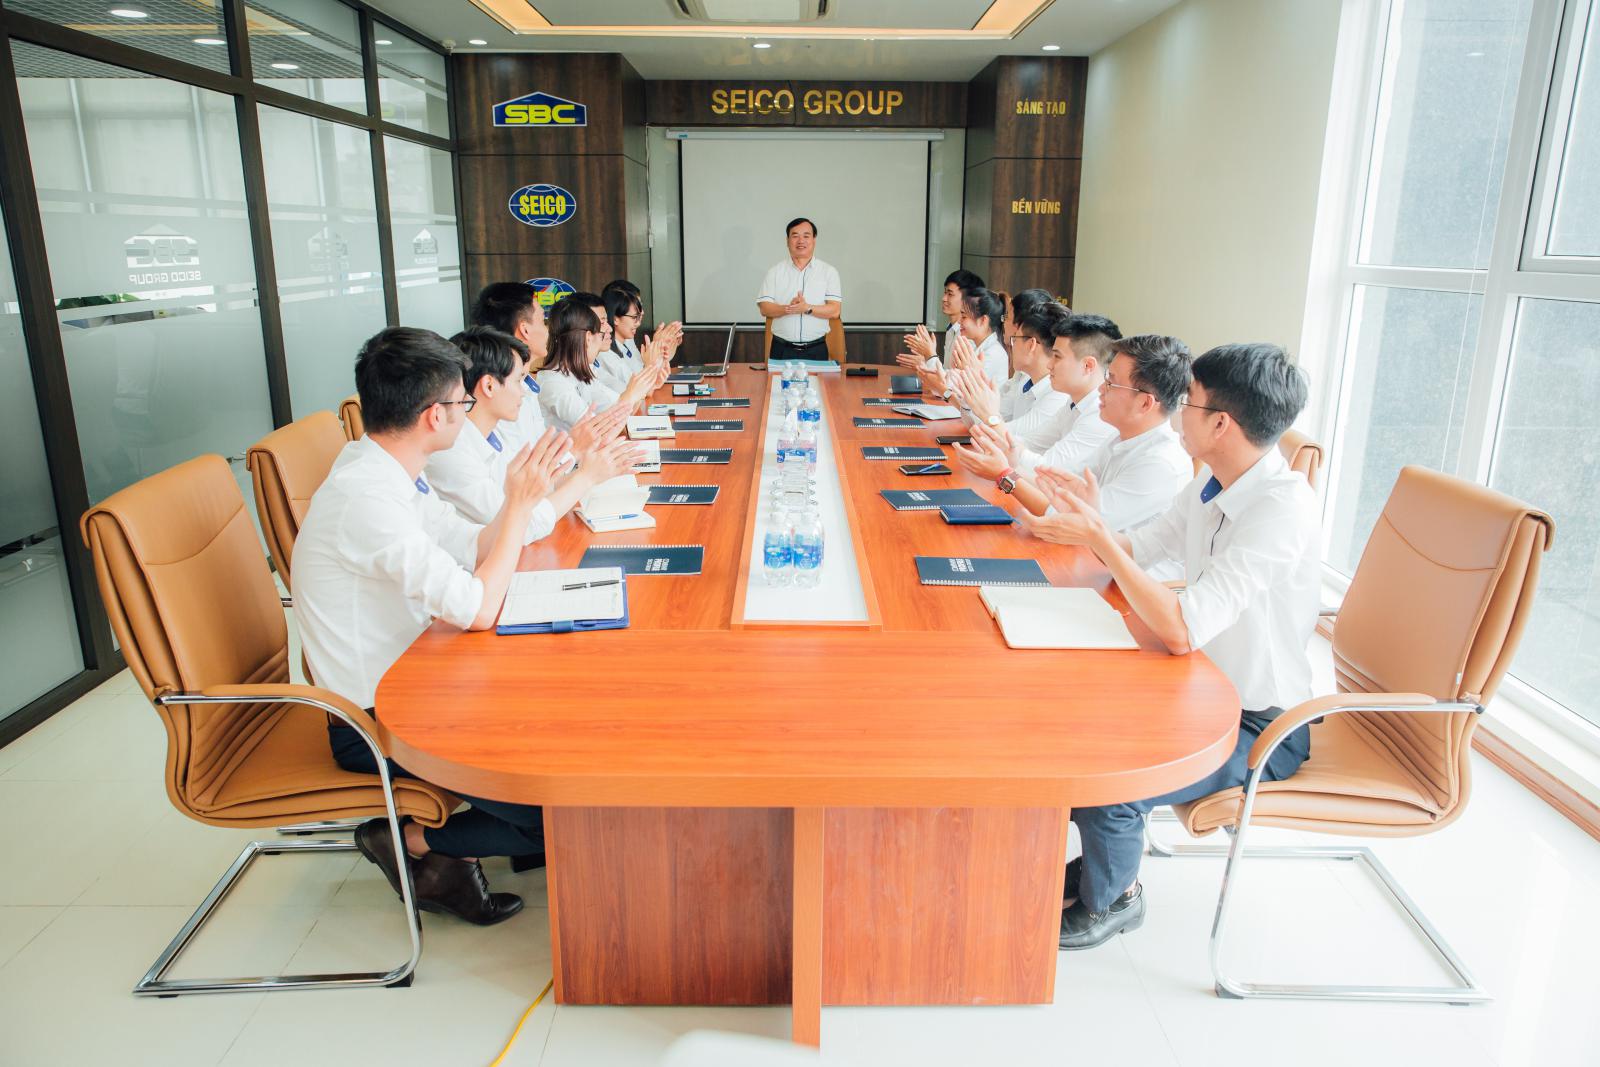 SEICO: SEICO là một trong những thương hiệu nổi tiếng về kết cấu thép và định vị thương hiệu tại Việt Nam. Công ty không ngừng nỗ lực để cải tiến và đưa ra những sản phẩm mới để phục vụ khách hàng. Nếu bạn quan tâm đến các sản phẩm đến từ SEICO, hãy xem qua các ảnh trong bài viết này để có thêm thông tin.